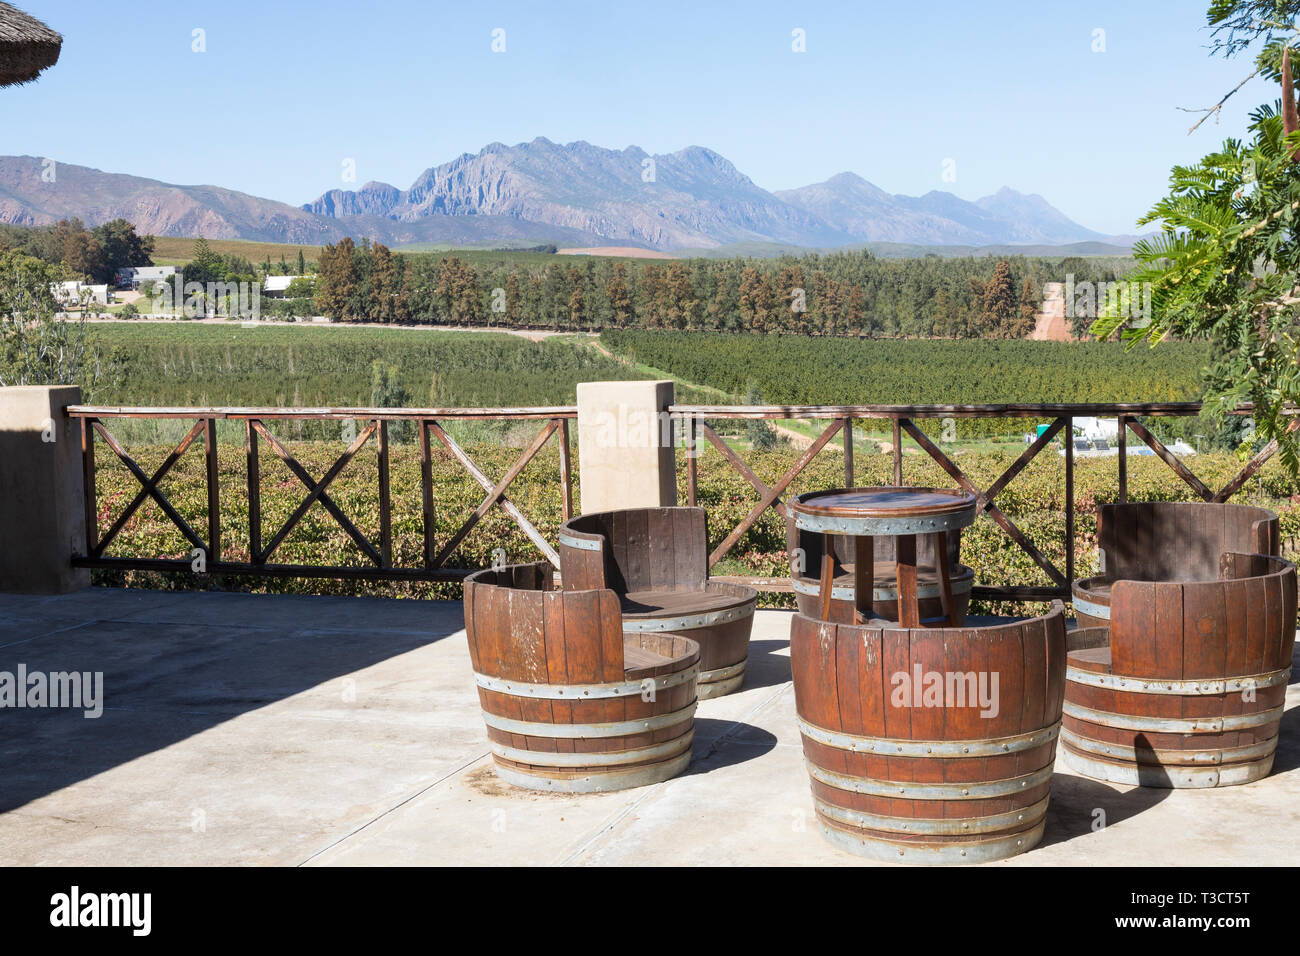 Kranskop Wine Estate, Klaagsvoegds, Robertson Wine Valley, Western Cape Winelands, Afrique du Sud. Vue depuis le pont au-dessus des caves, dégustation de vin ve Banque D'Images